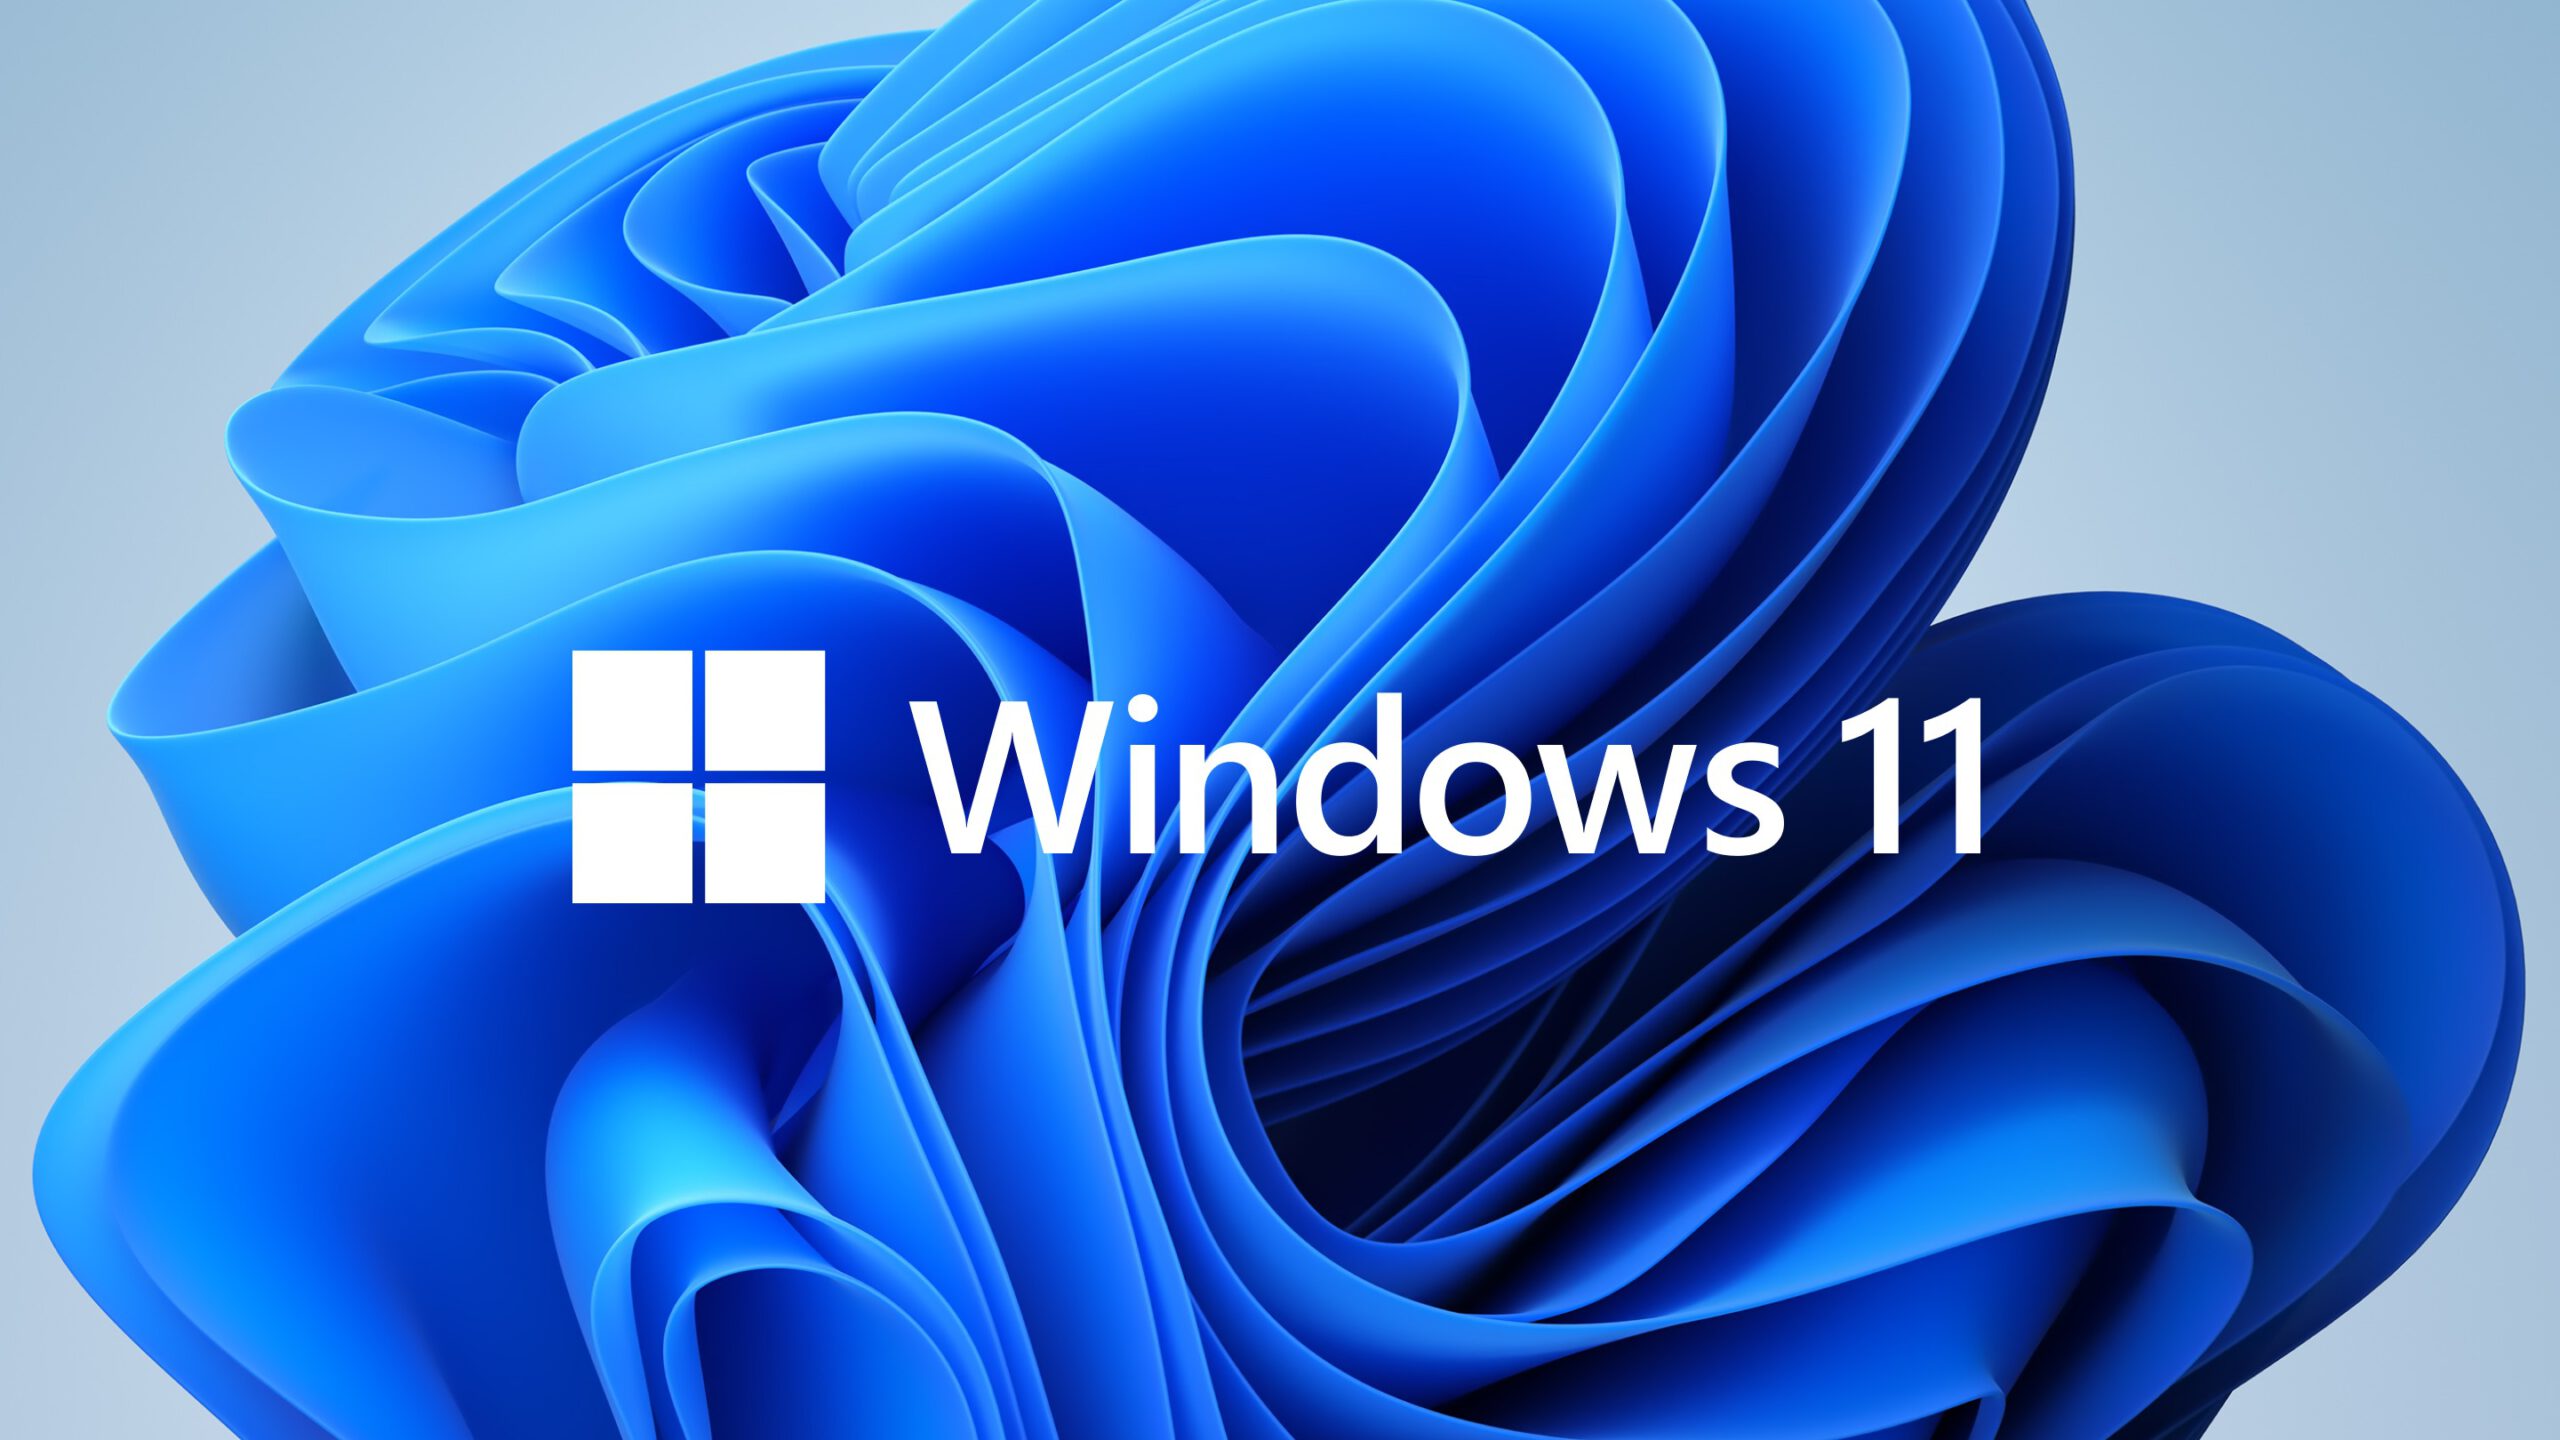 Windows 11 creates hundreds of empty folders for no reason